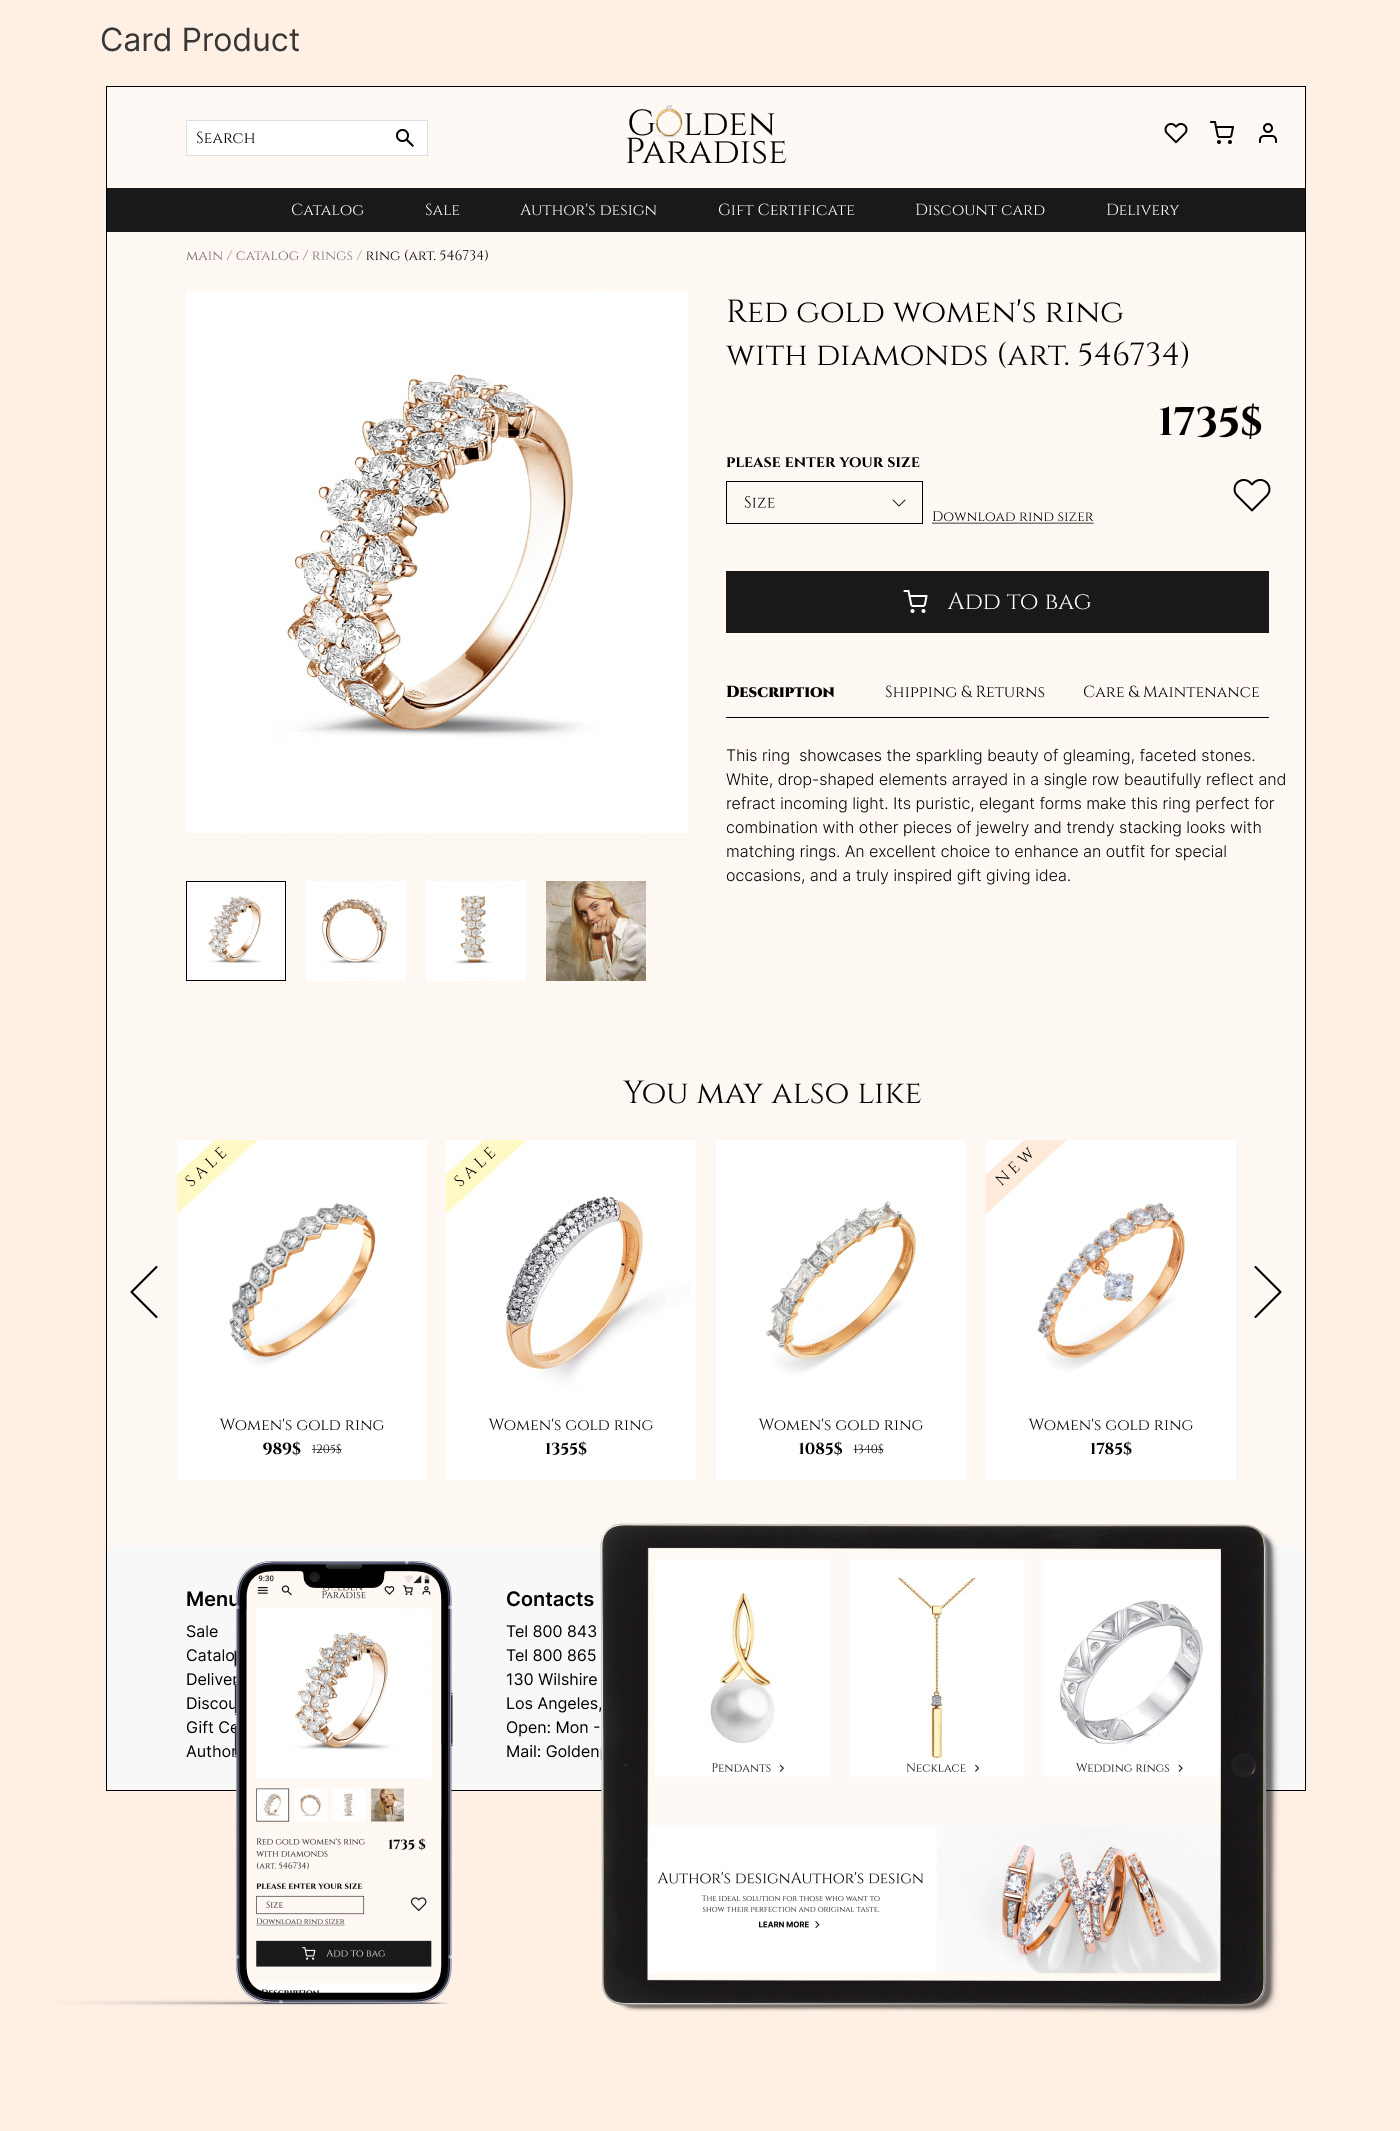 design designer Figma jewelry mobile UI ui design UI/UX ux UX design